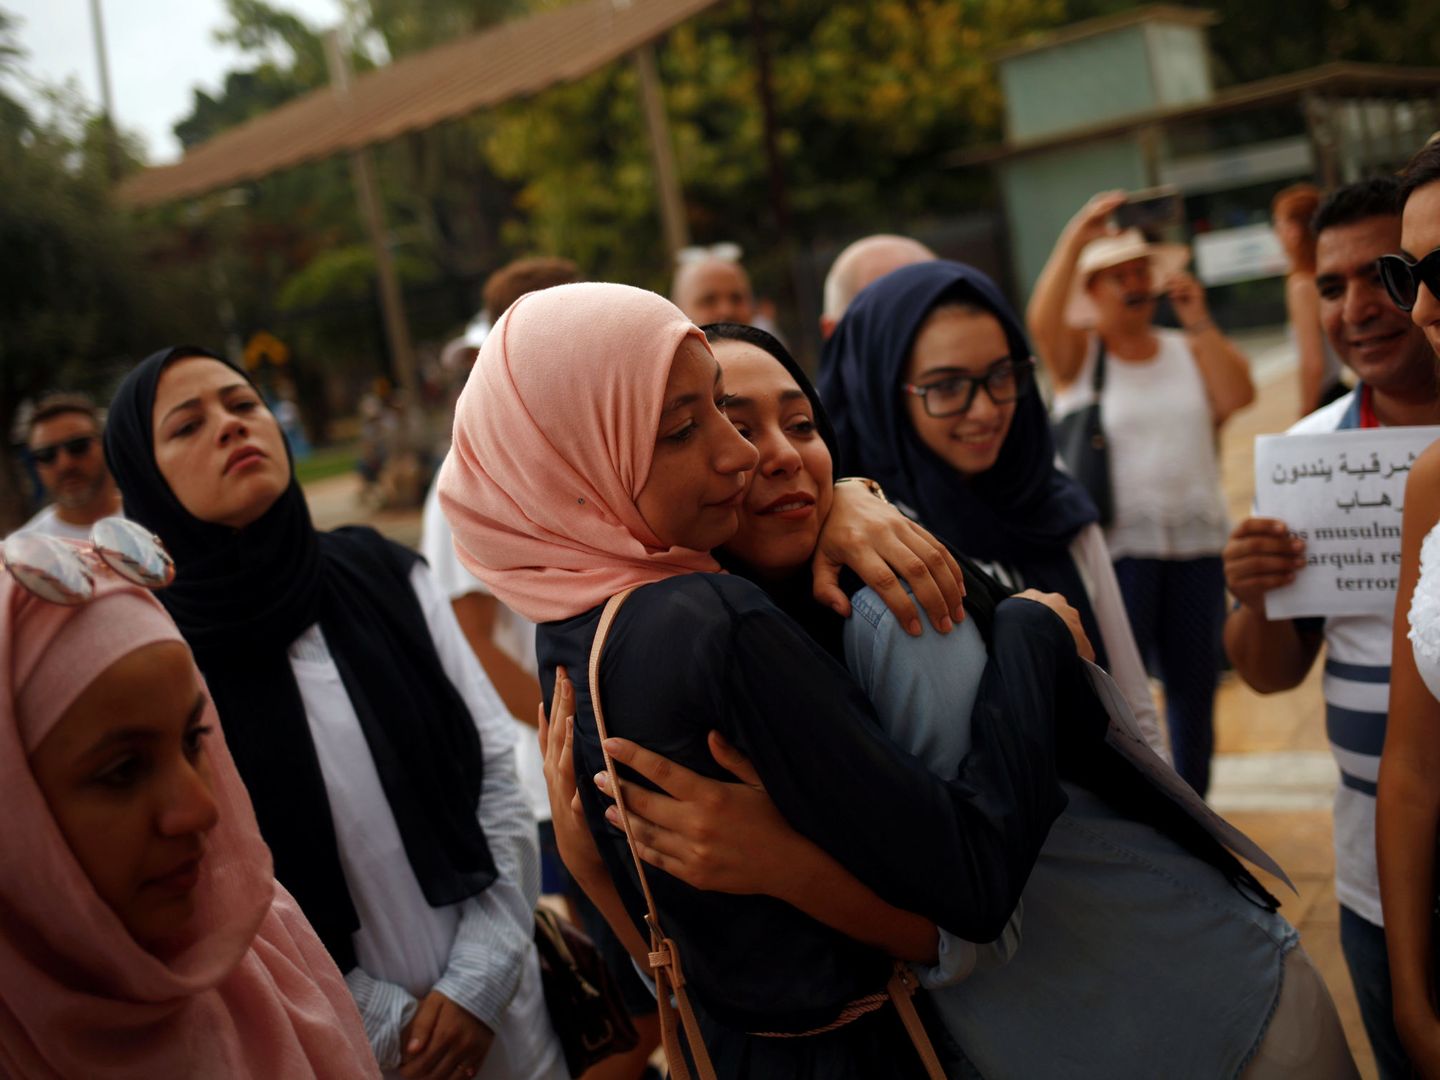 Mujeres musulmanas durante una concentración para condenar el atentado de Las Ramblas, en Fuengirola. (Reuters)